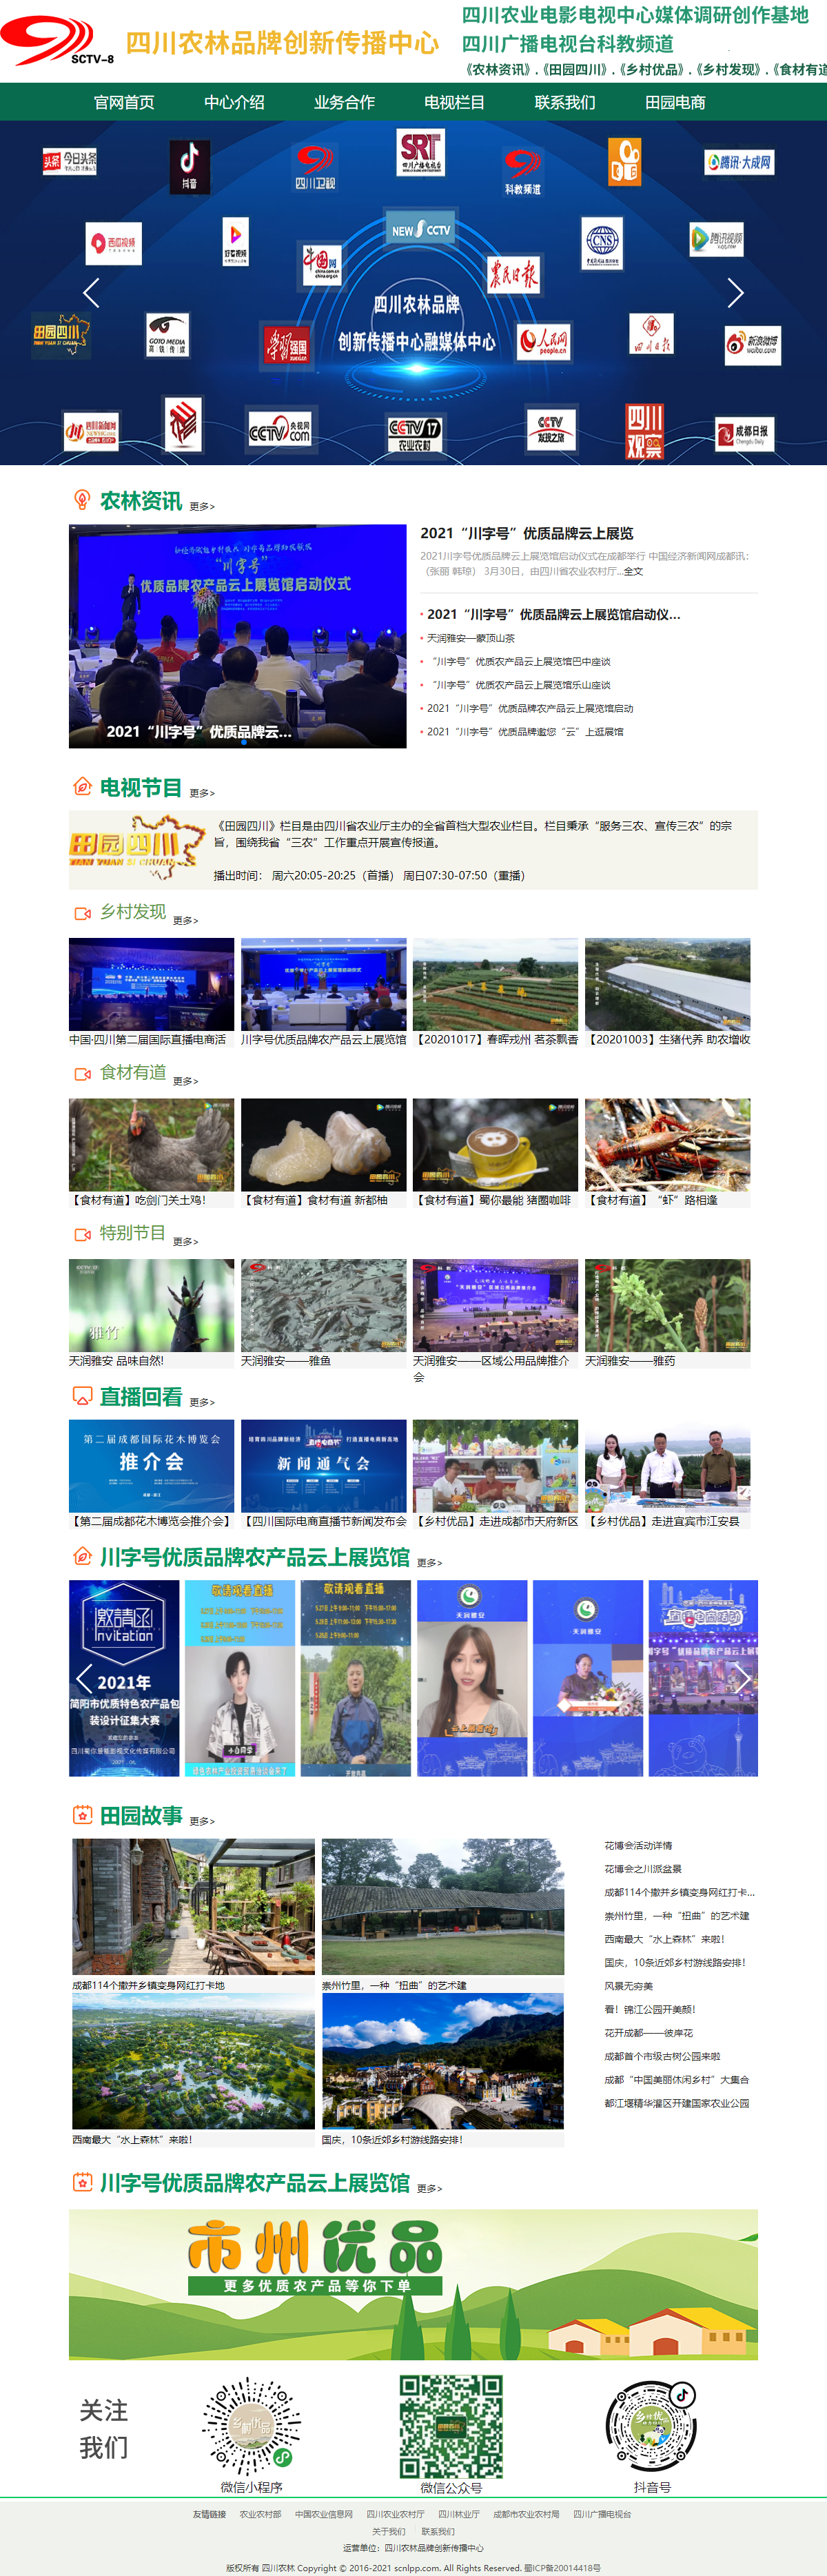 四川农影文化传播有限公司网站案例